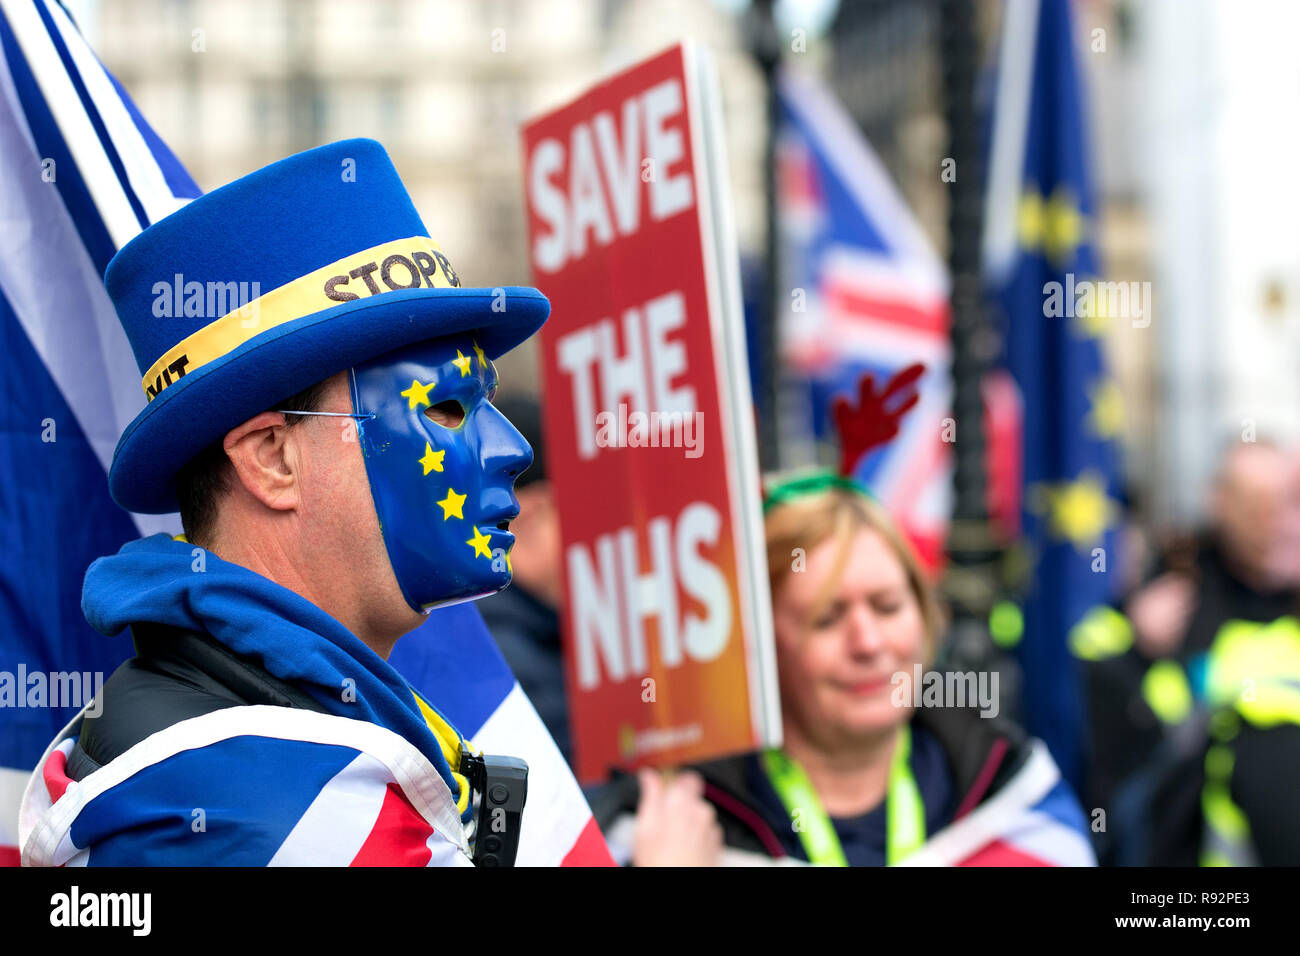 19 déc 2018 Londres. Anti-Brexit protestataires SODEM continuer leur protestation Brexit arrêt quotidienne à l'extérieur du Parlement. Steve Bray (l'homme avec des plaques en fond de chaque nouvelles programme) dans le masque Crédit : PjrFoto/Alamy Live News Banque D'Images